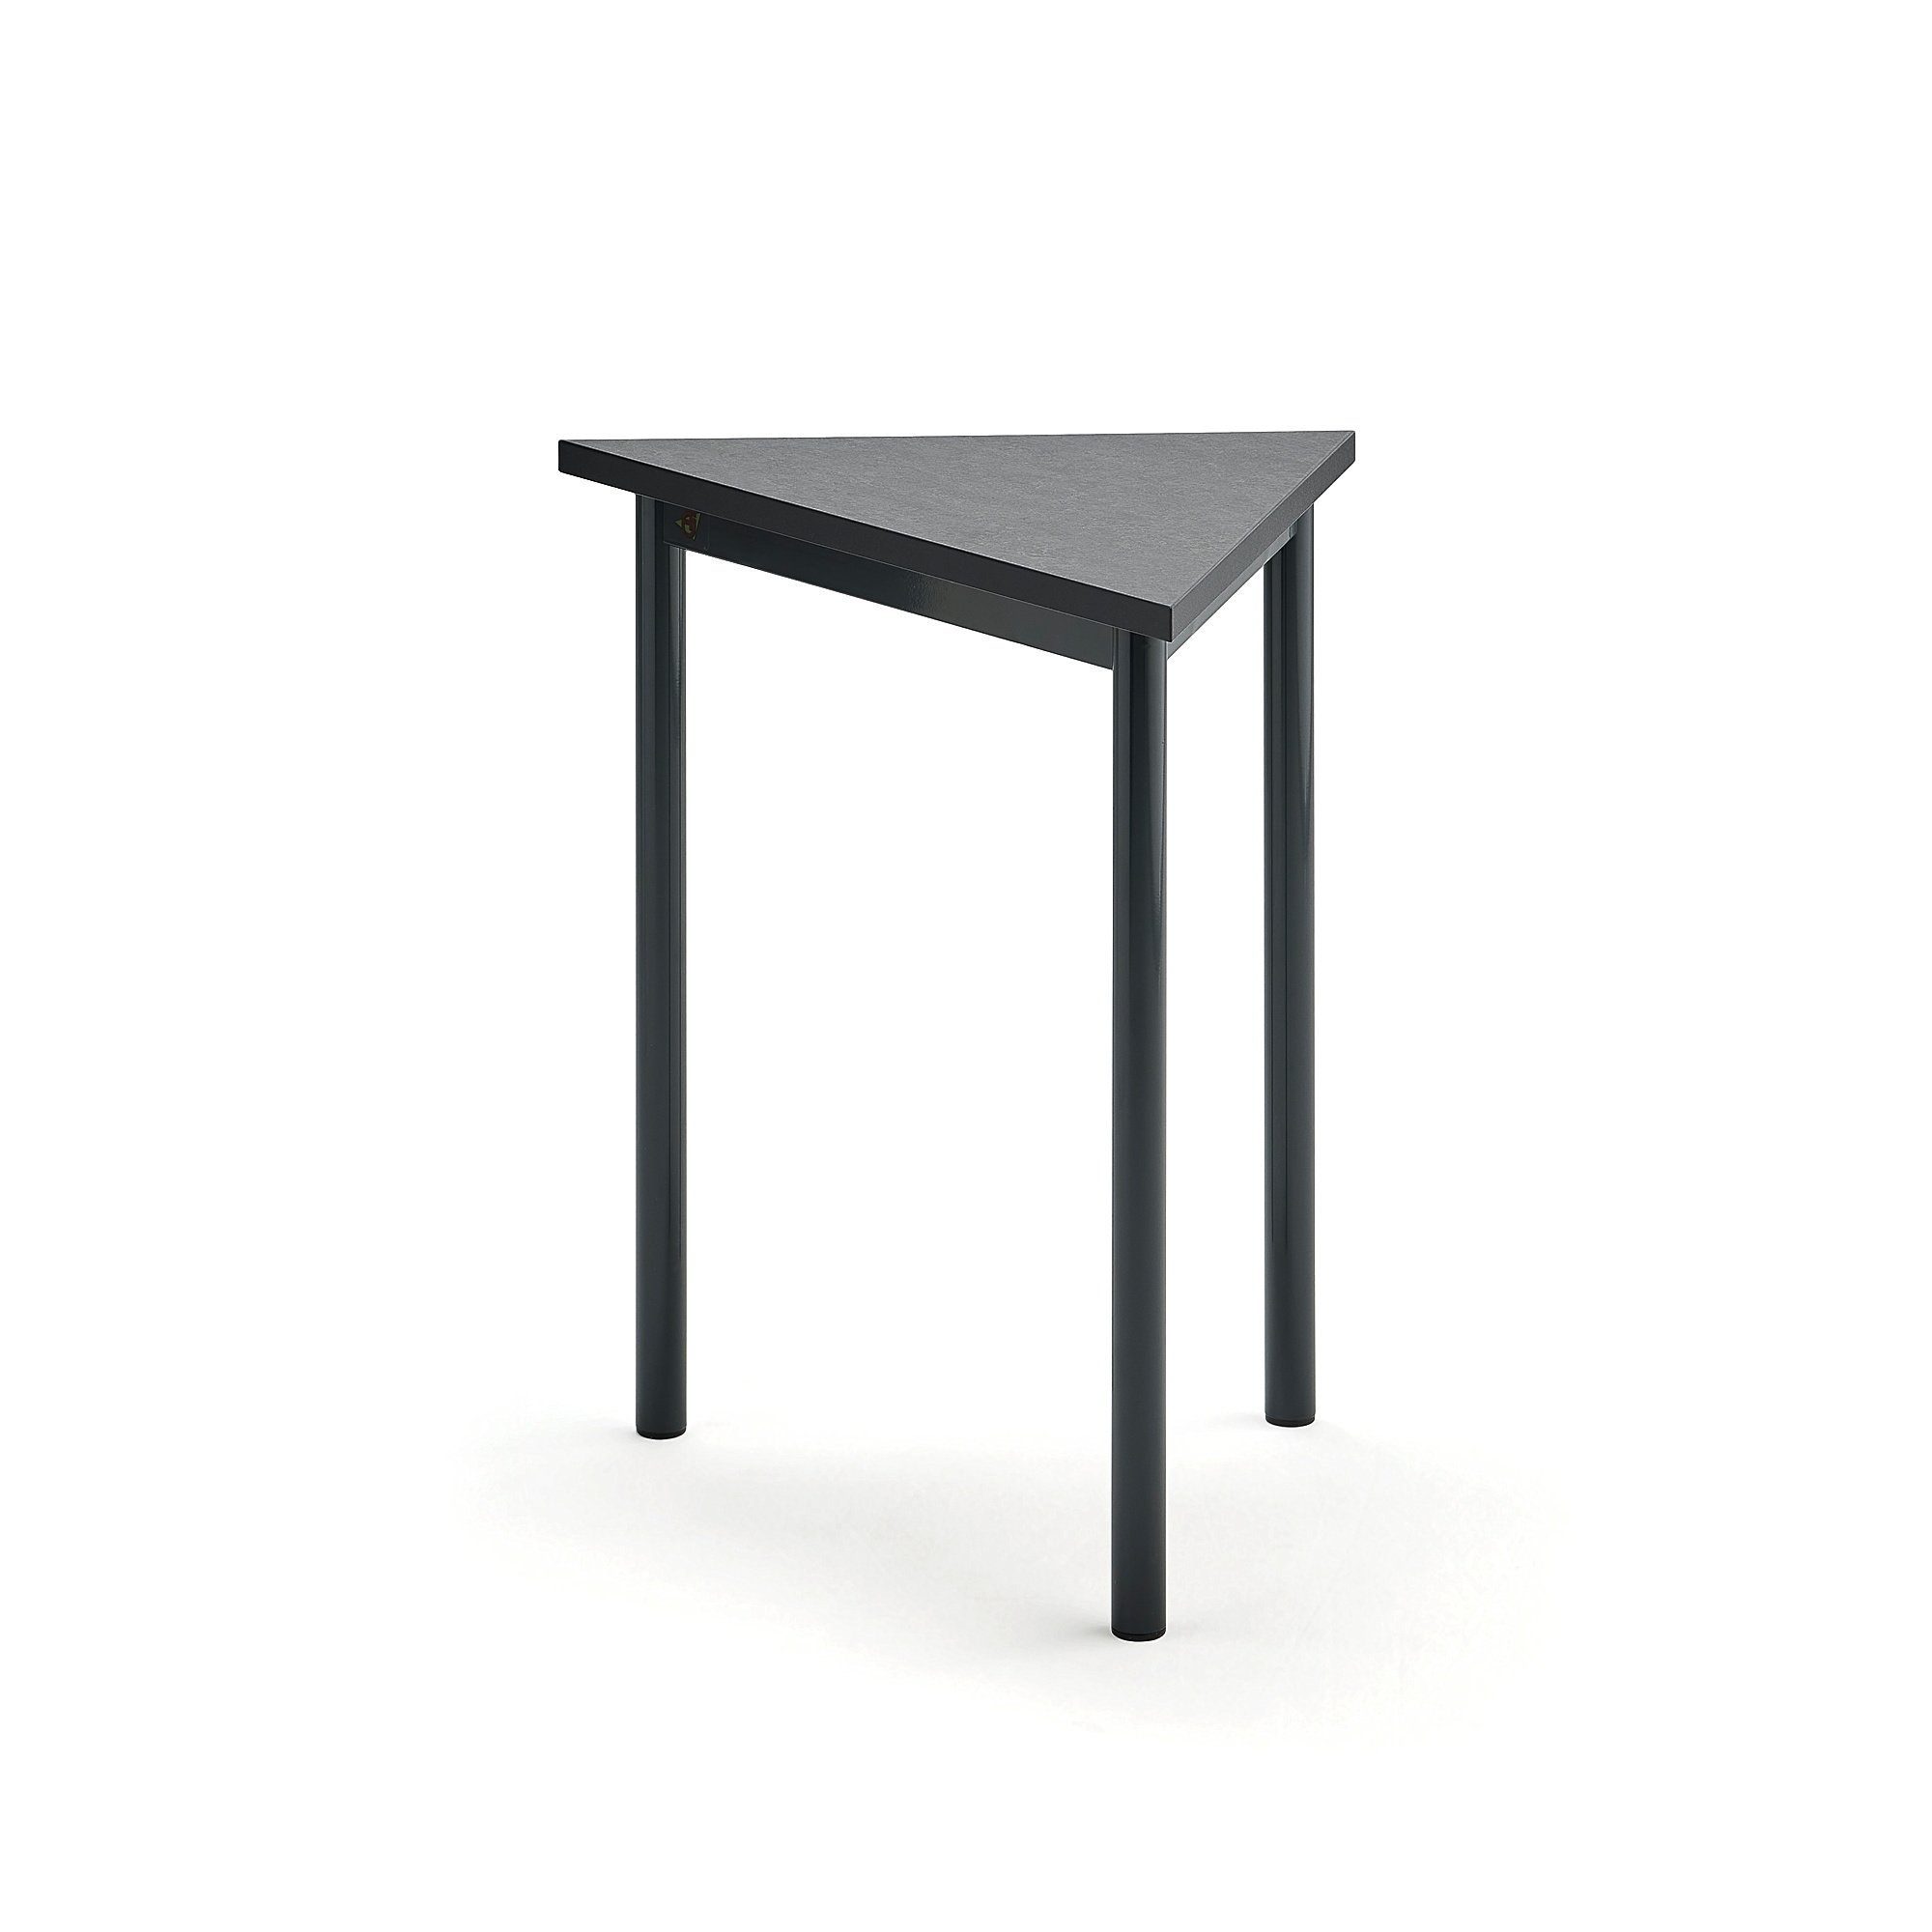 Stôl SONITUS TRIANGEL, 700x600x720 mm, linoleum - tmavošedá, antracit